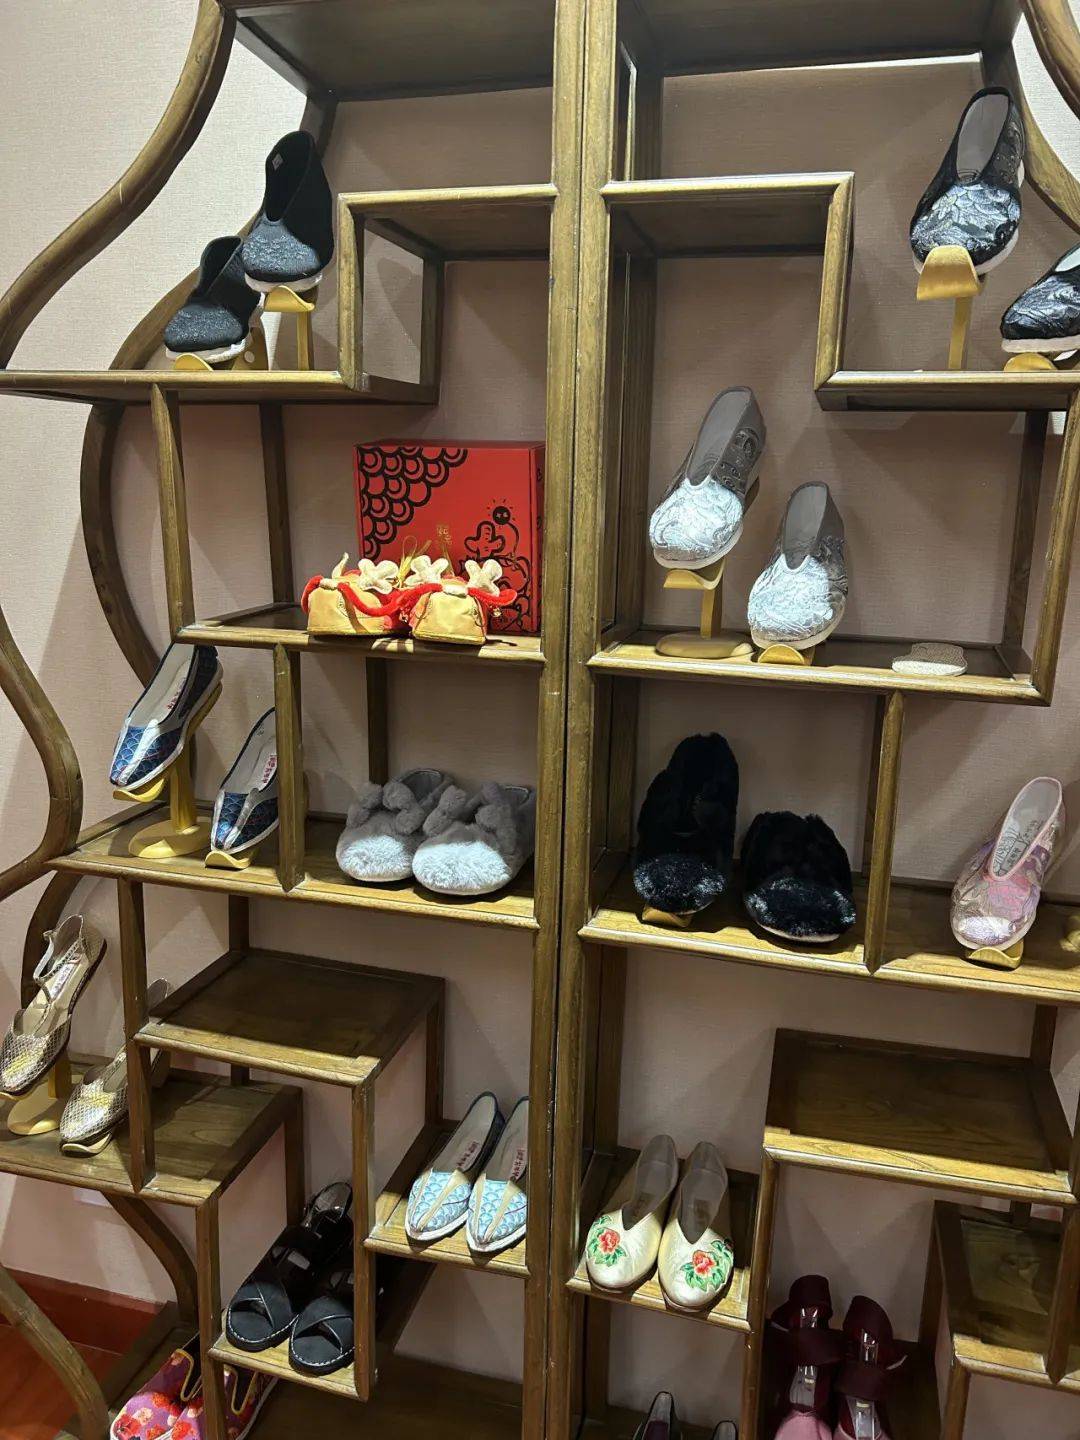 春节鞋店促销活动语图片